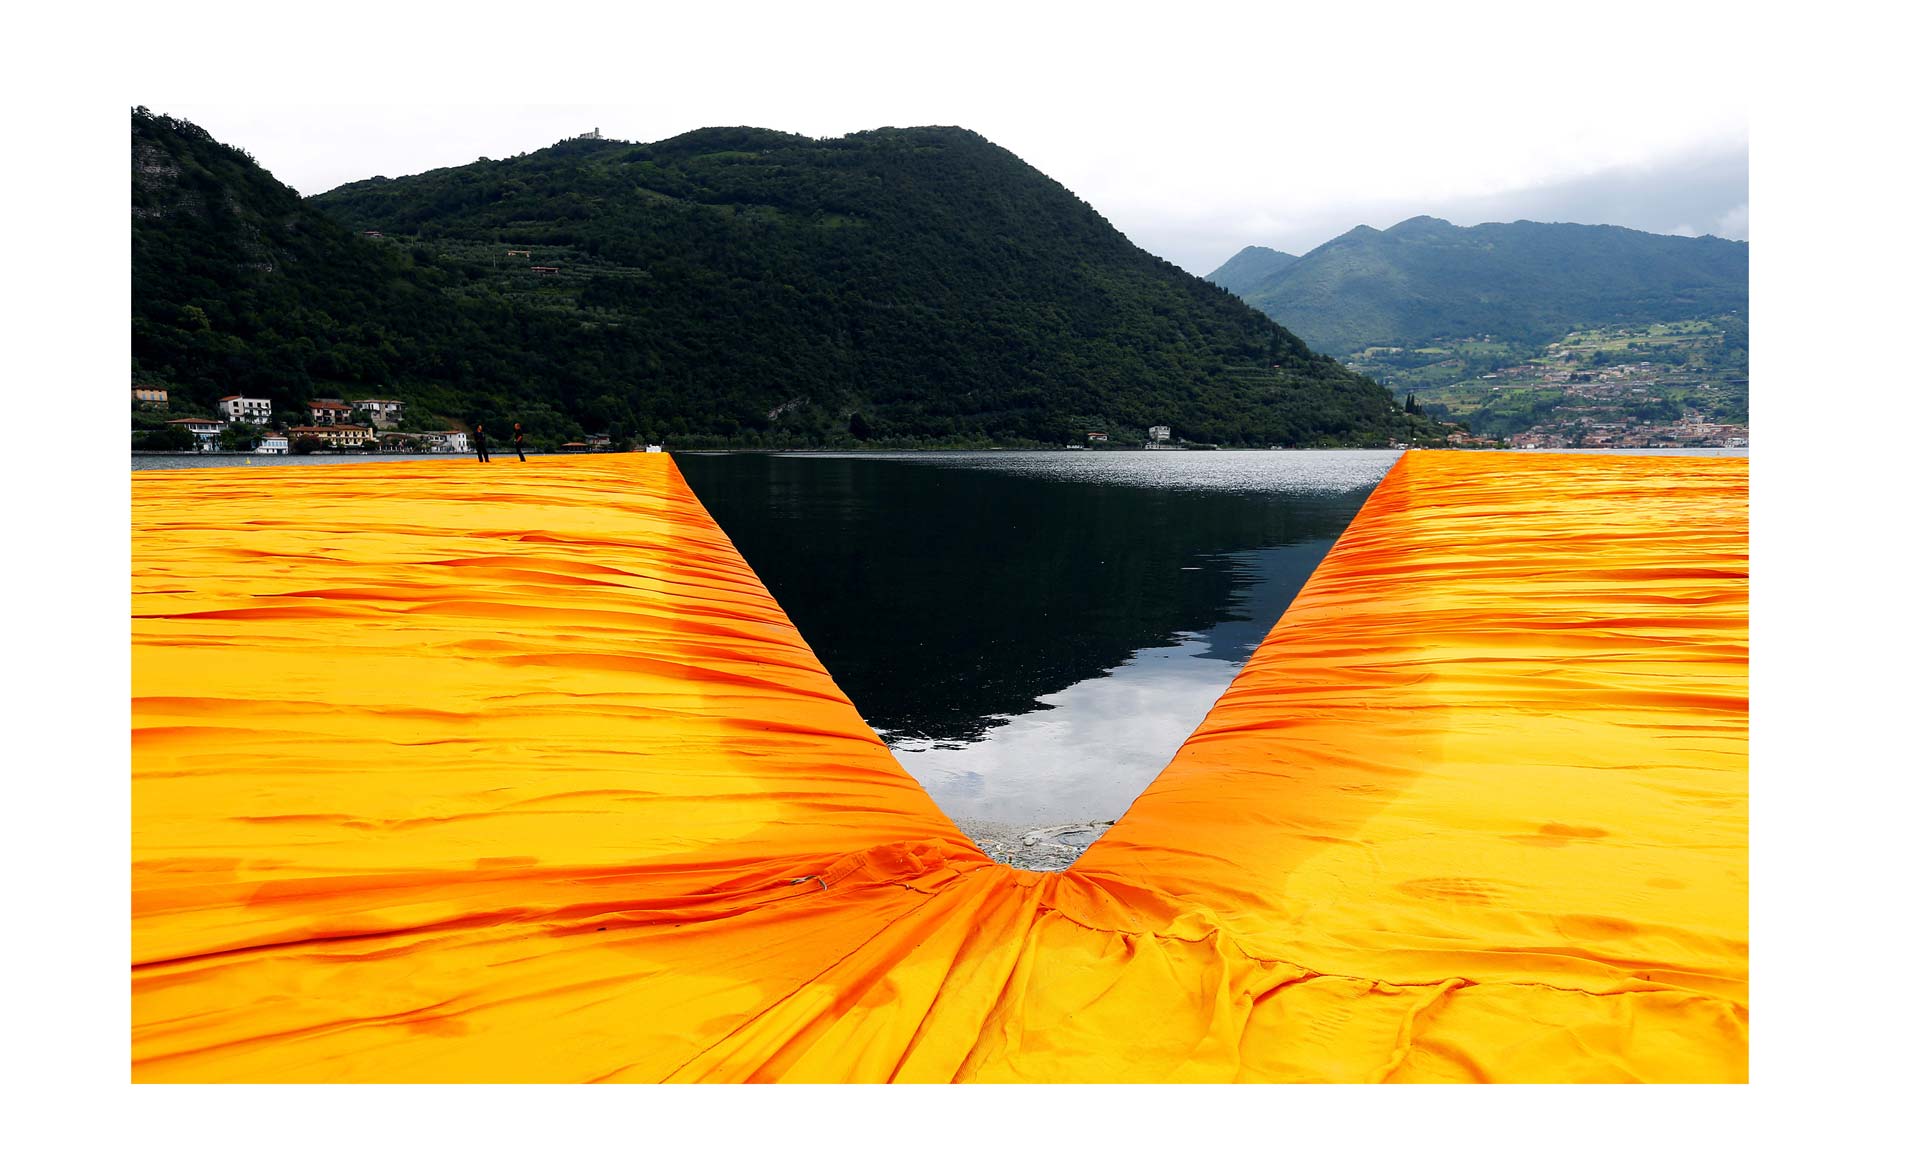 El artista Christo inauguró su nueva instalación en Italia: tres kilómetros de plataformas flotantes de color amarillo brillante